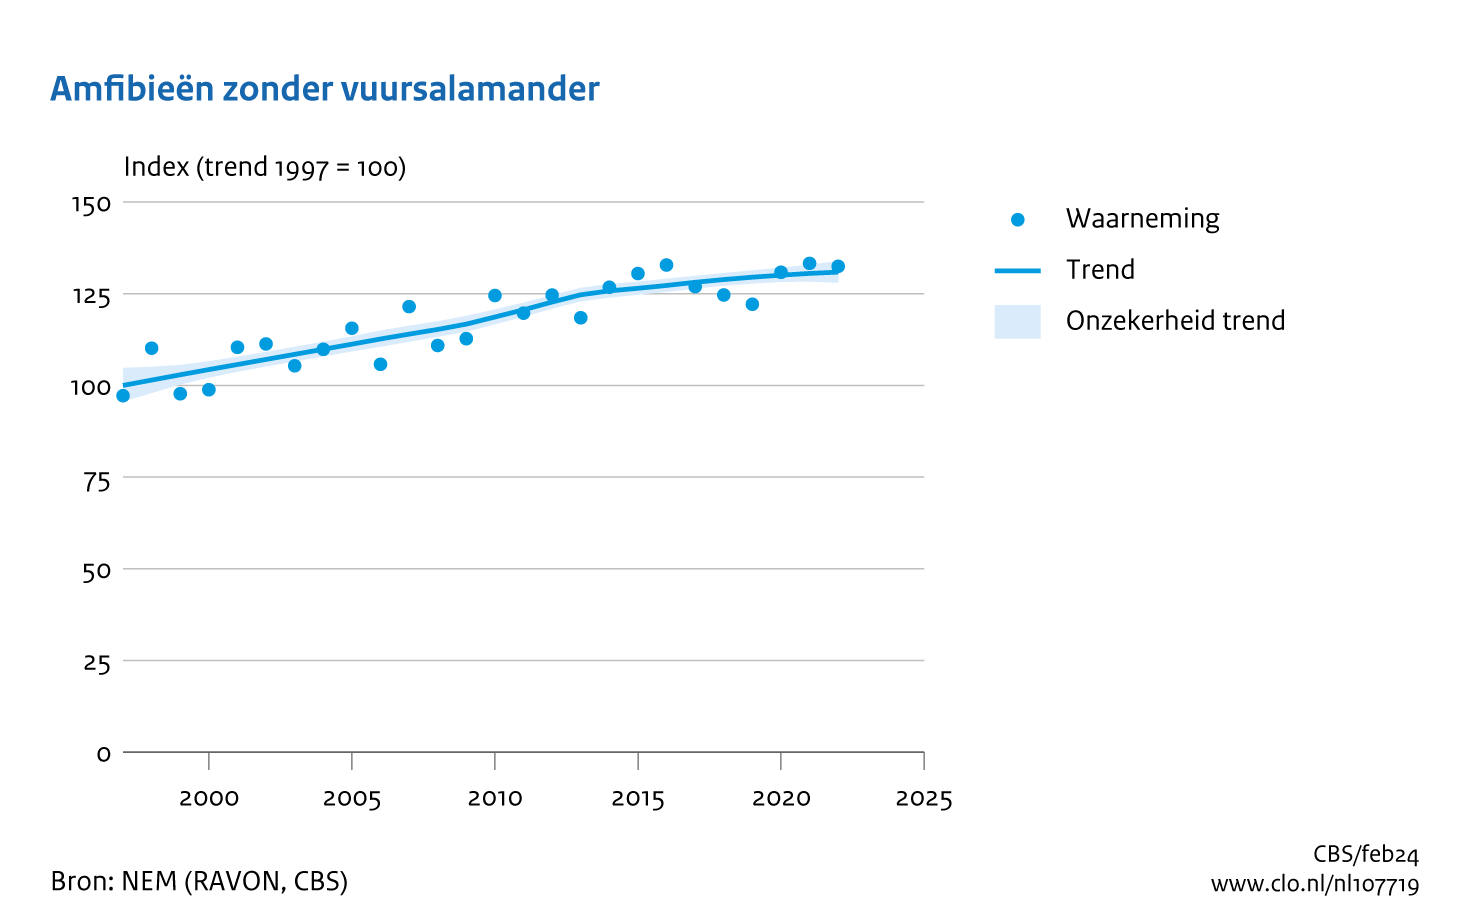 De grafiek Amfibieën zonder vuursalamander laat de trend van de aantalsindexen van de soortgroep amfibieën zien voor het geval dat je de vuursalamander uit die groep weglaat. De grafiek laat dan een gestage stijging zien van 100 in 1997 tot 131 in 2022.